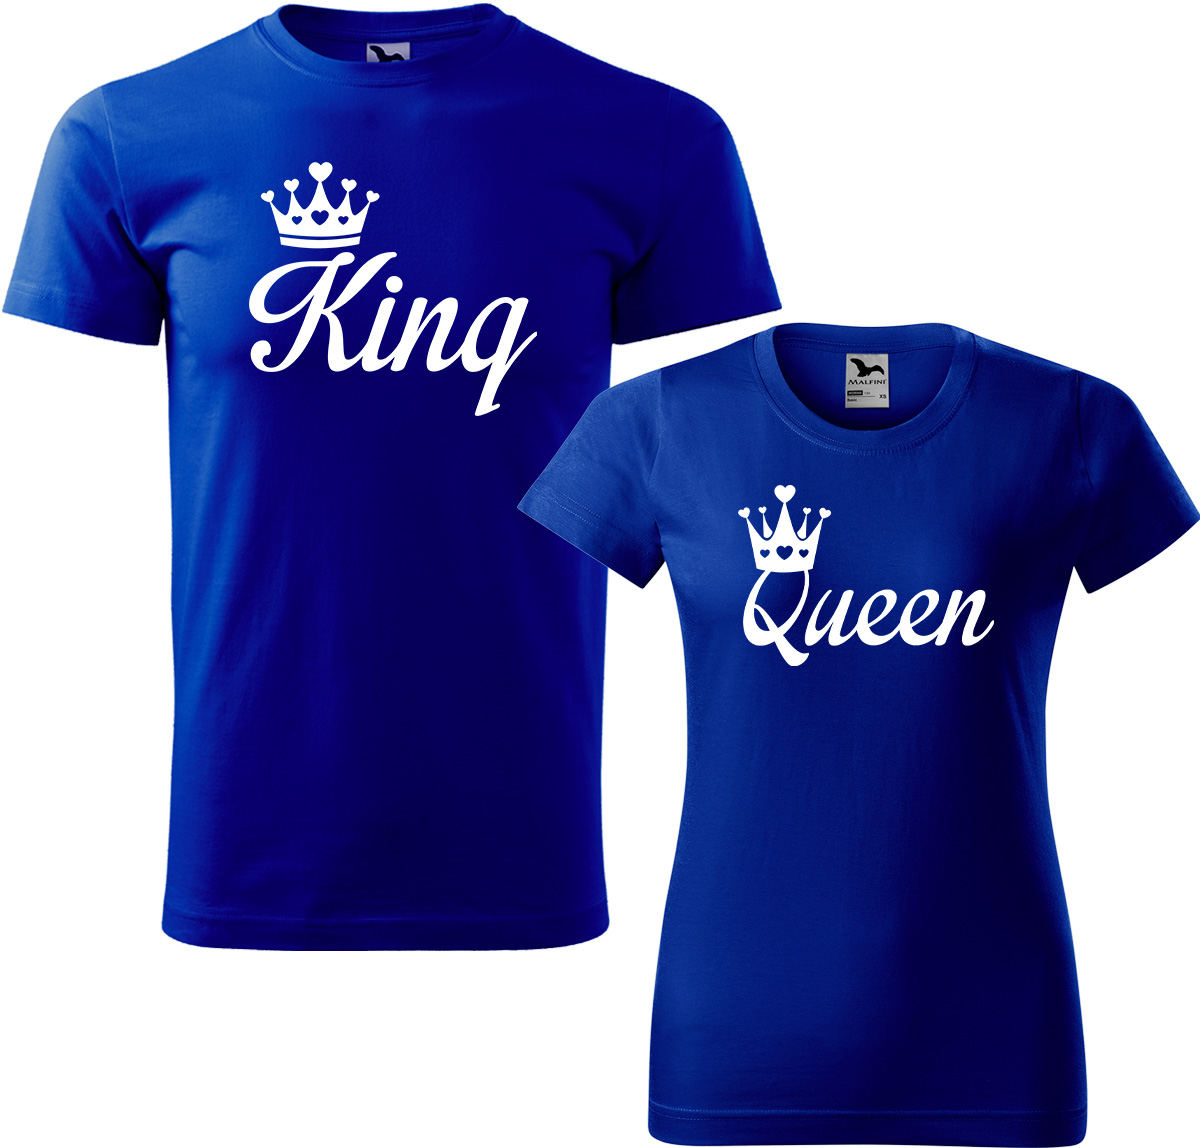 Trička pro páry - King a queen Barva: Královská modrá (05), Velikost dámské tričko: 2XL, Velikost pánské tričko: 3XL